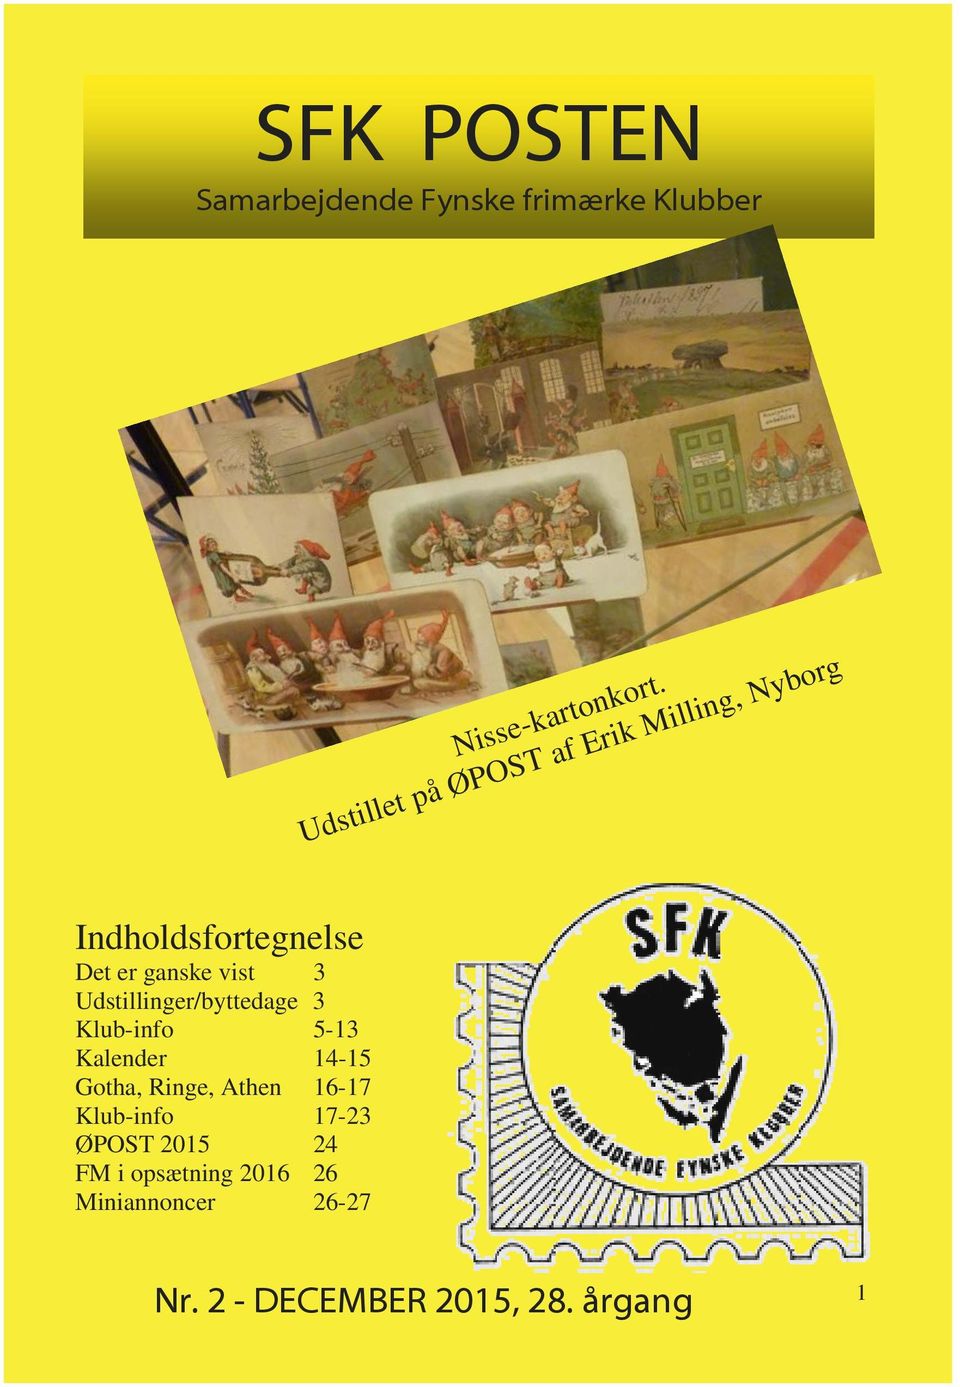 Udstillinger/byttedage 3 Klub-info 5-13 Kalender 14-15 Gotha, Ringe, Athen 16-17